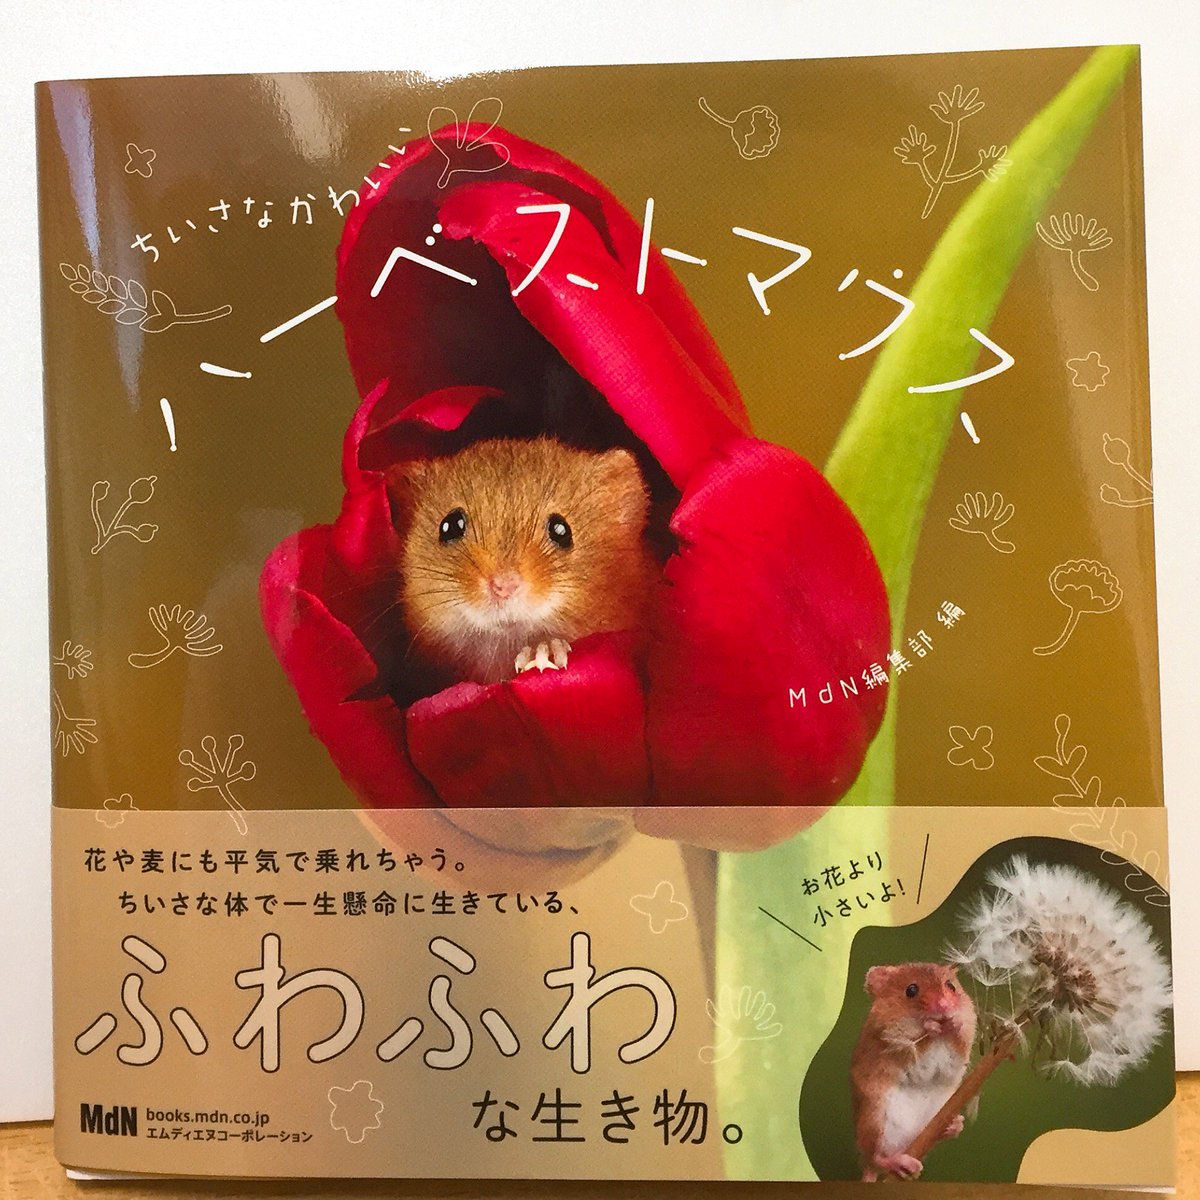 ジュンク堂書店 名古屋店 No Twitter 芸術書 ハーベストマウス ってご存知ですか 日本ではカヤネズミと呼ばれるとっても小さな彼らの写真集ができました ちいさなかわいいハーベストマウス Mdnコーポレーション 体長5 7cmのチューリップにだって埋もれ